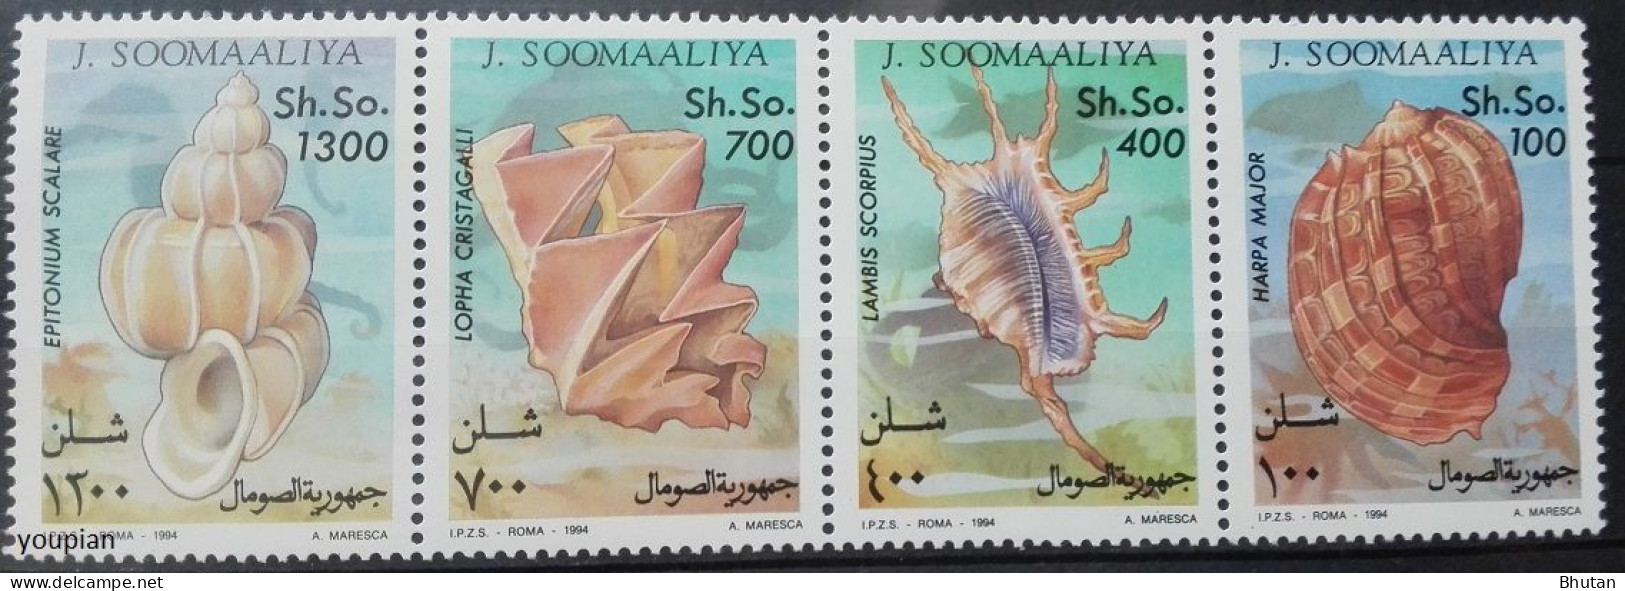 Somalia 1994, Marine Mollusks, MNH Stamps Strip - Somalia (1960-...)